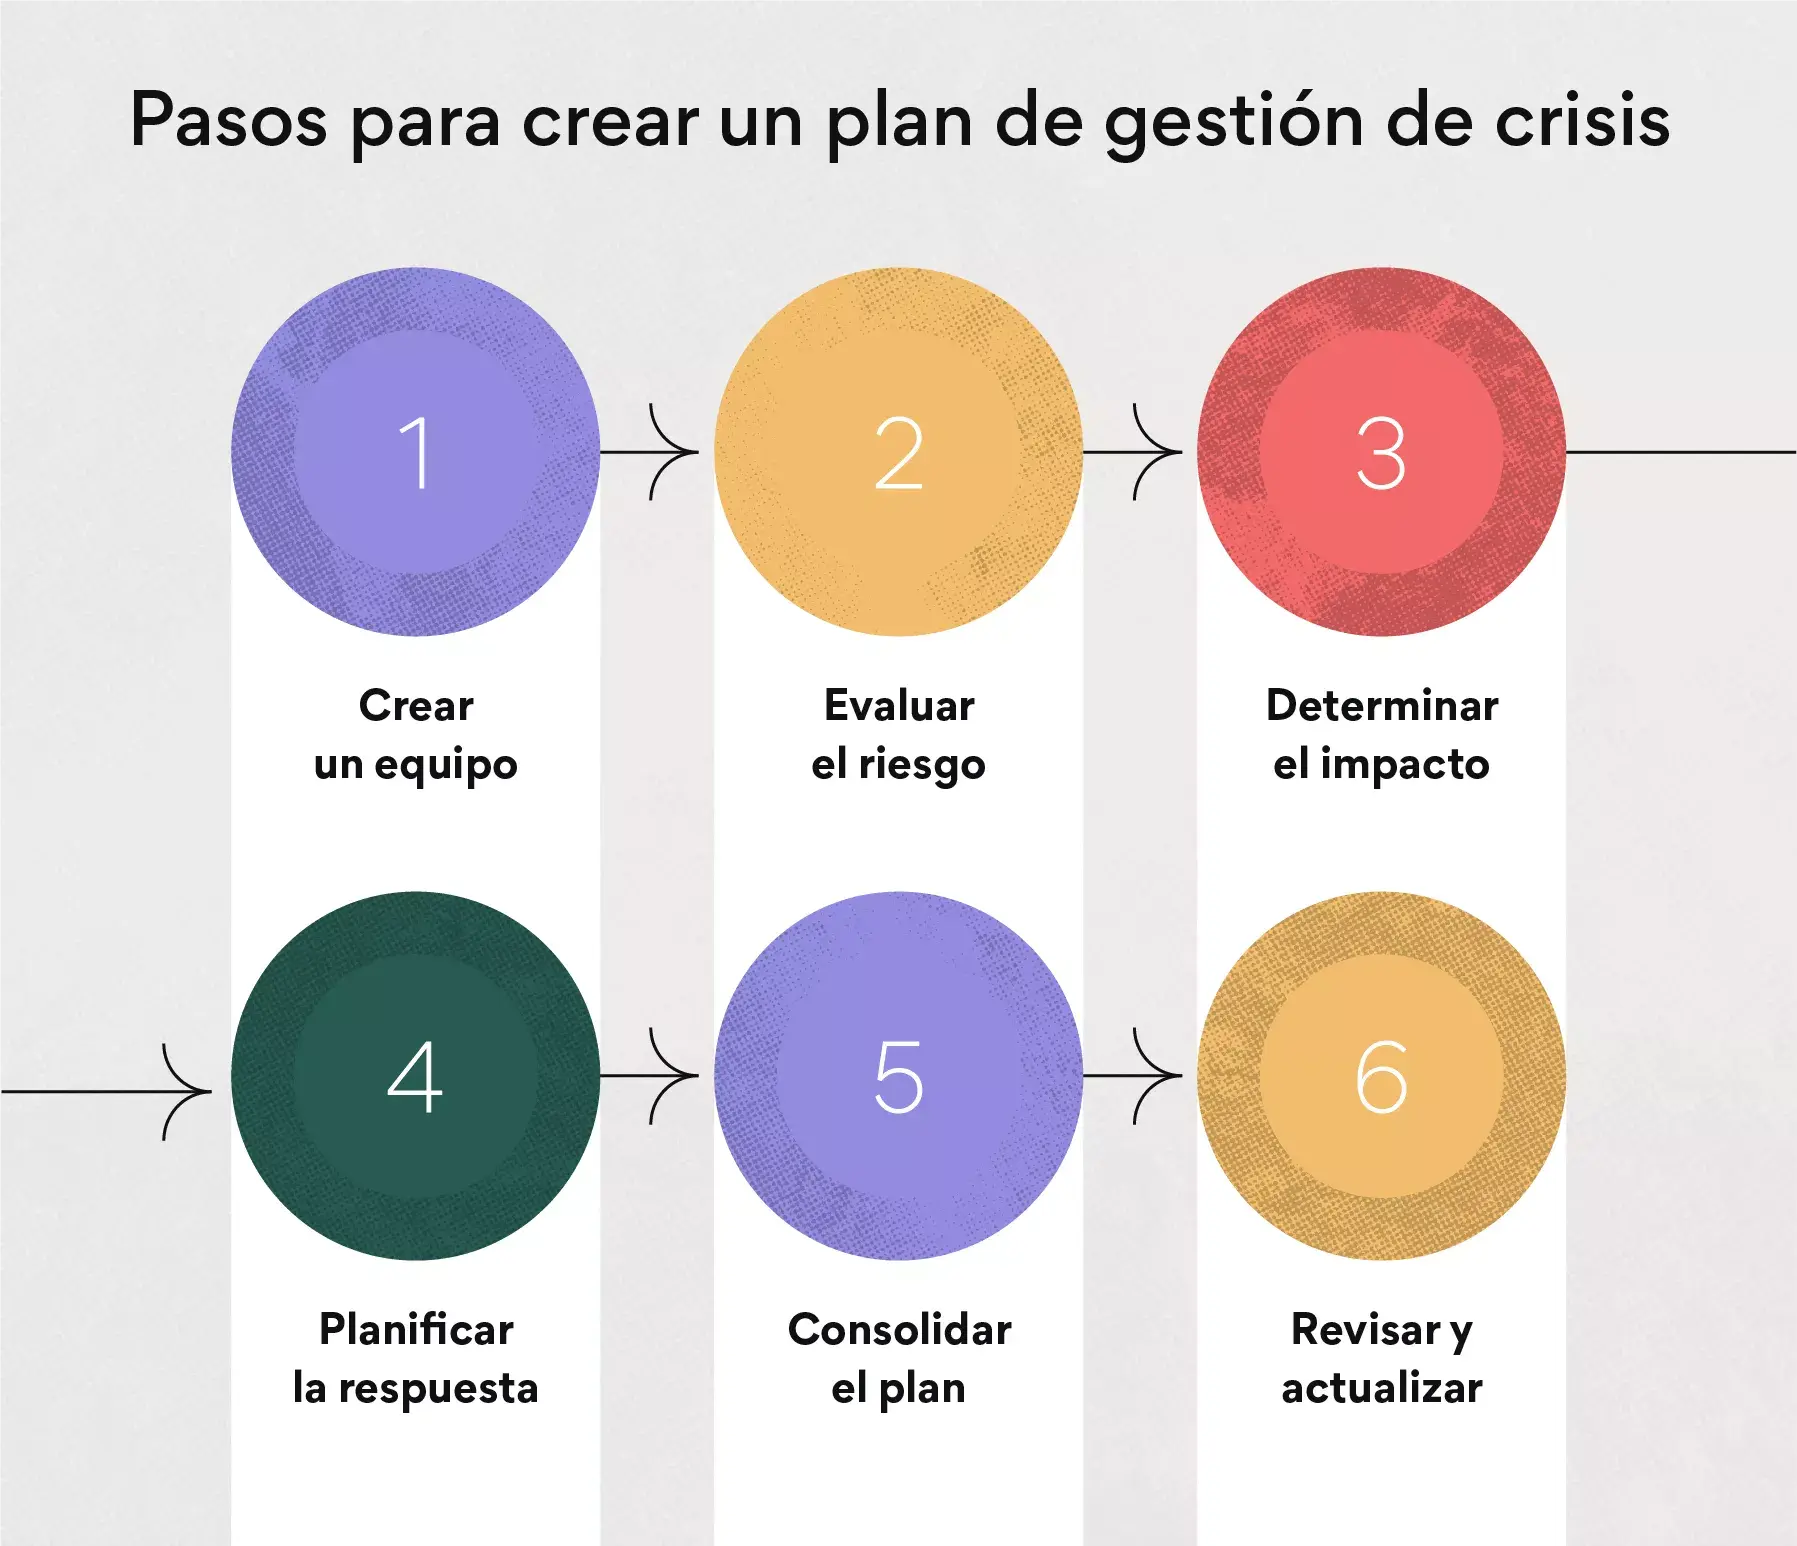 6 pasos para crear un plan de gestión de crisis